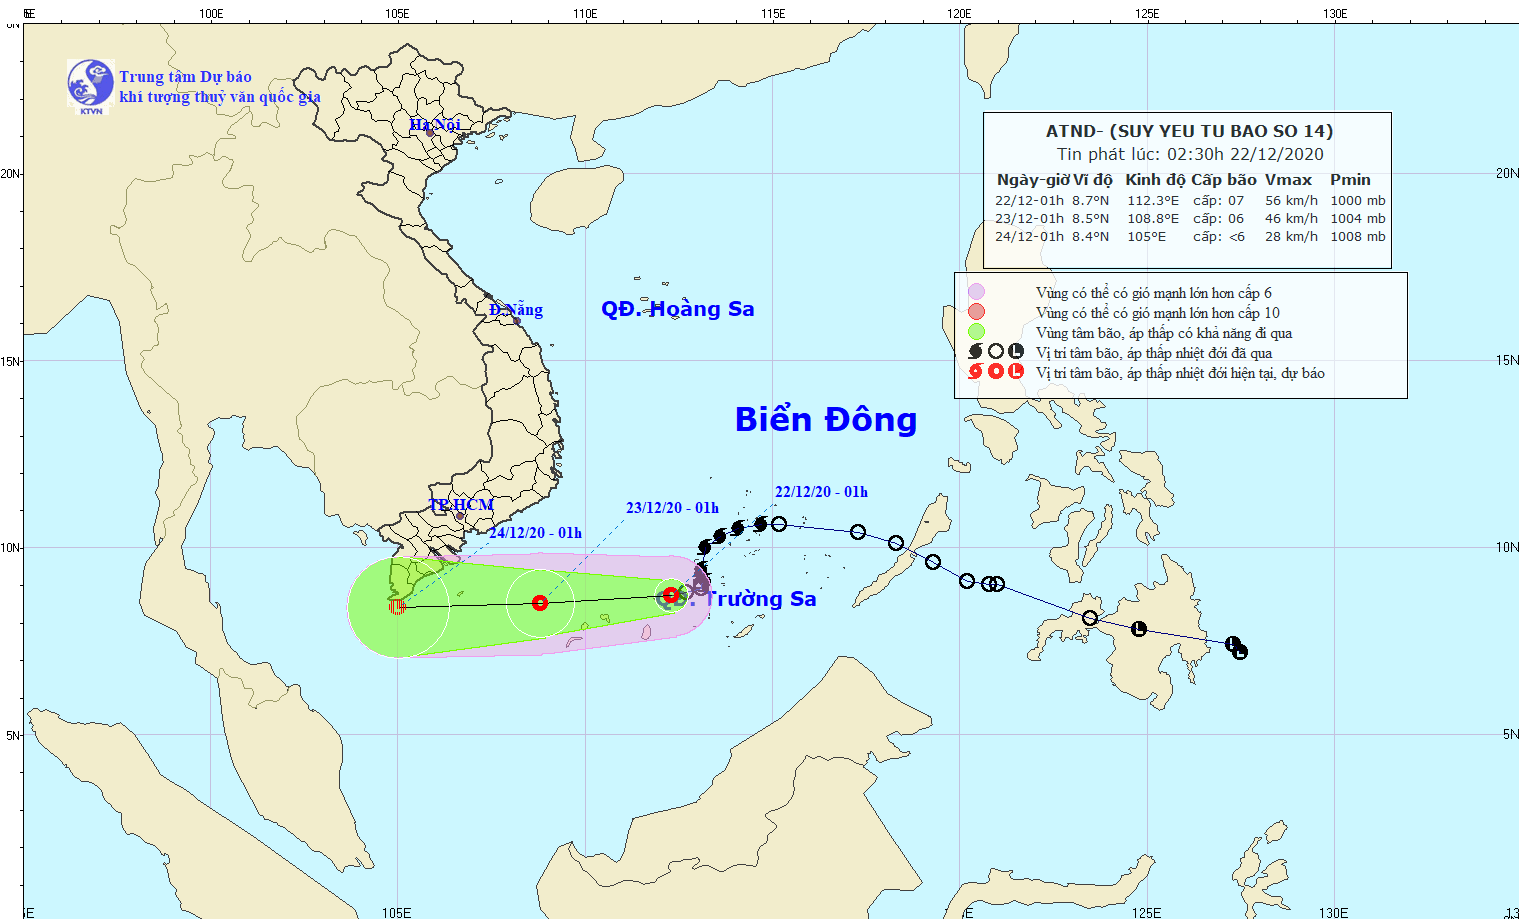 Dự báo trong 24 giờ tới, áp thấp nhiệt đới di chuyển theo hướng Tây, mỗi giờ đi được 15-20km. (Nguồn: nchmf.gov.vn)